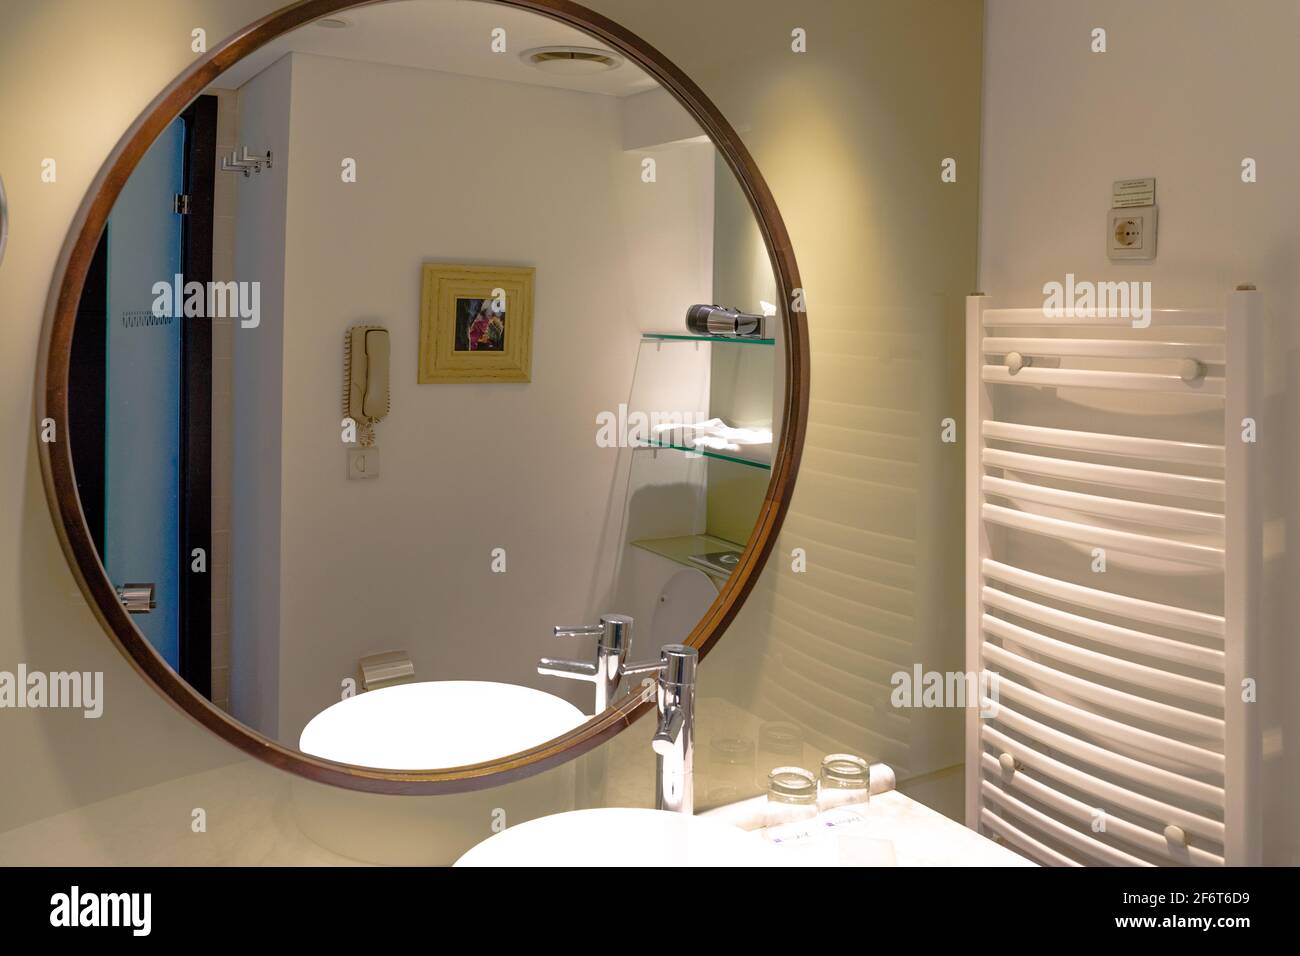 Un grande specchio rotondo nel moderno bagno interno in un appartamento o hotel, con il lavandino e rubinetto riflesso Foto Stock